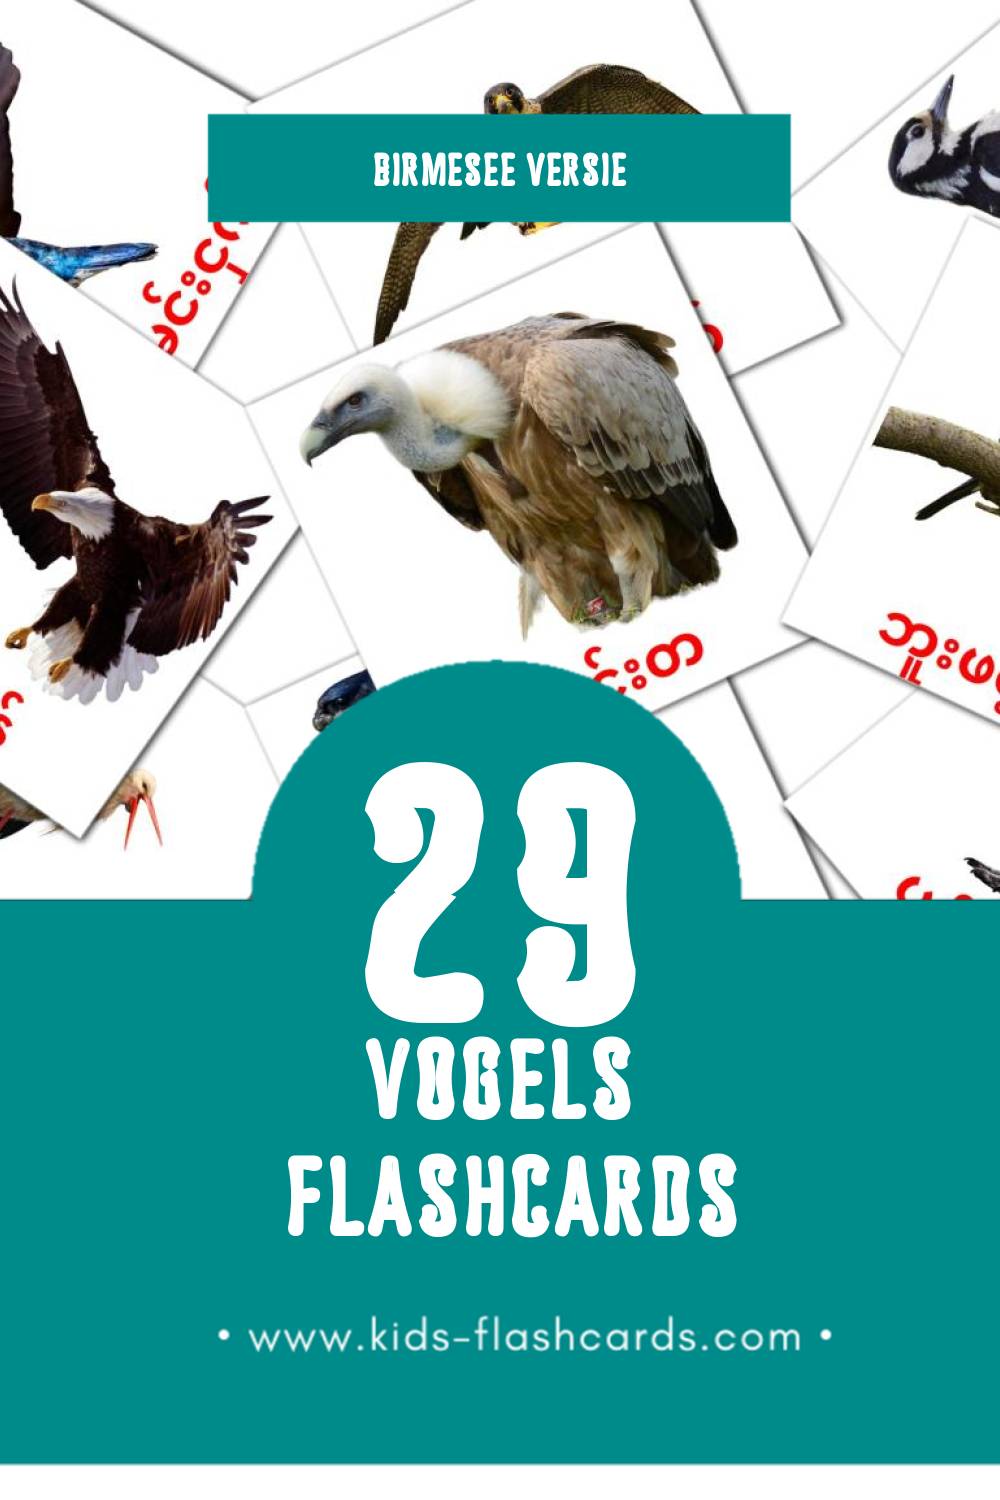 Visuele ငှက်များ Flashcards voor Kleuters (29 kaarten in het Birmese)